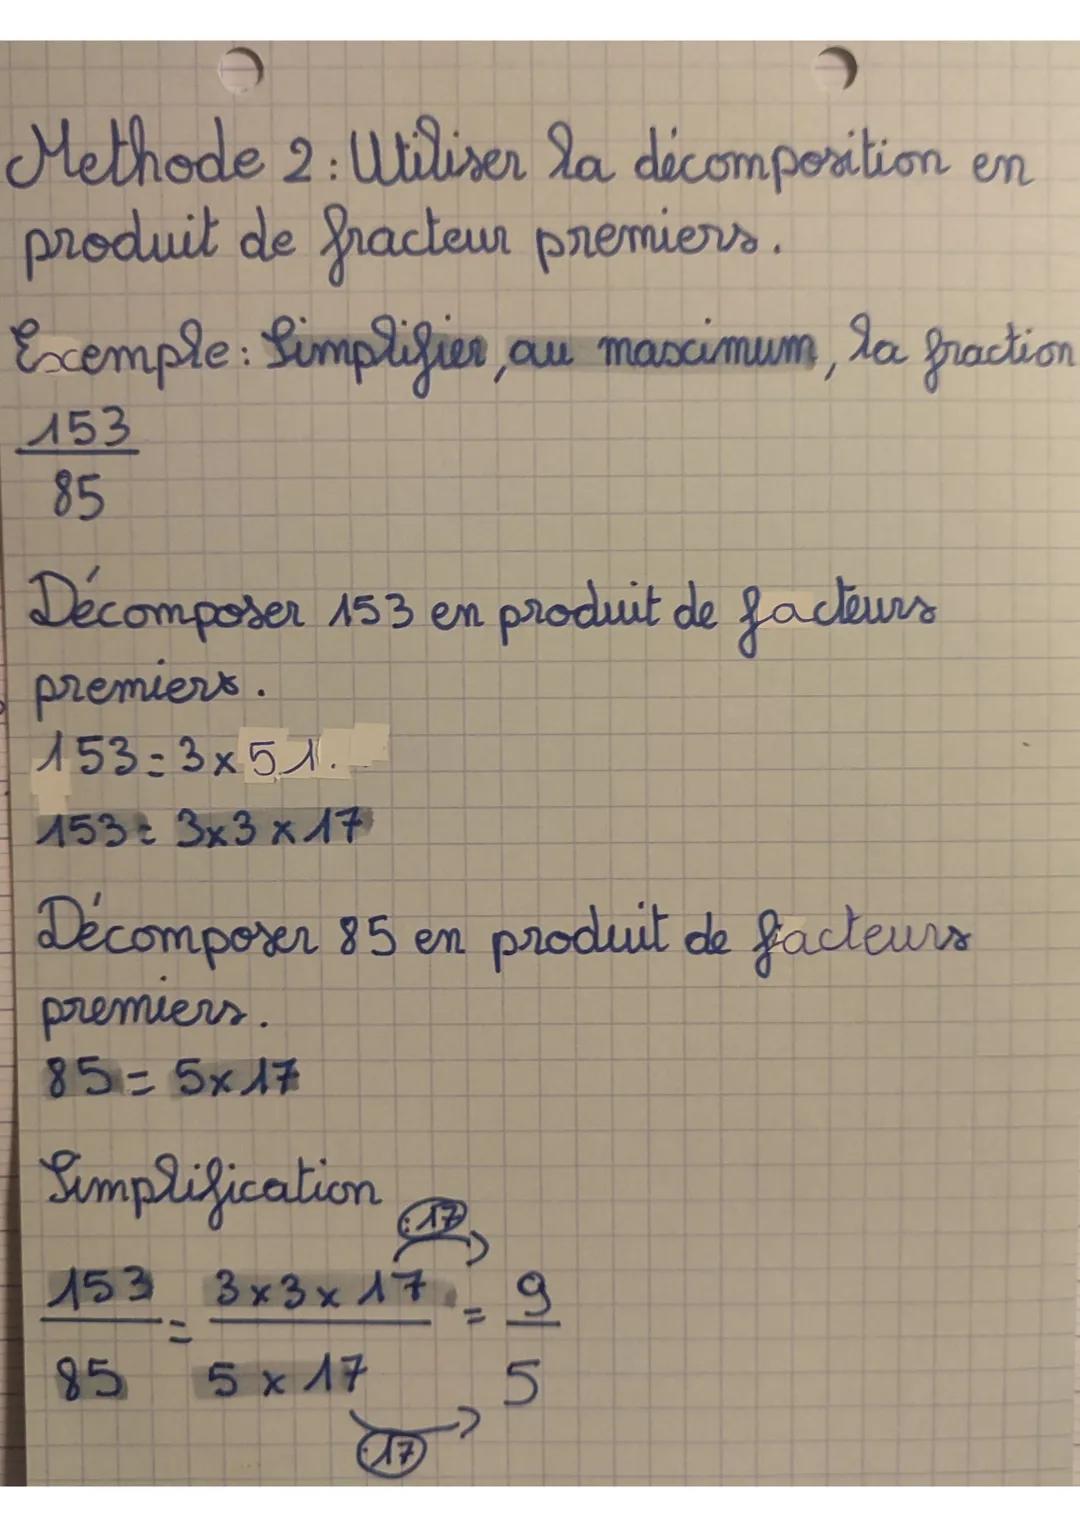 Methode 2: Utiliser la décomposition en
produit de fracteur premiers.
Exemple: Simplifier, au maximum, la fraction
153
85
Décomposer 153 en 